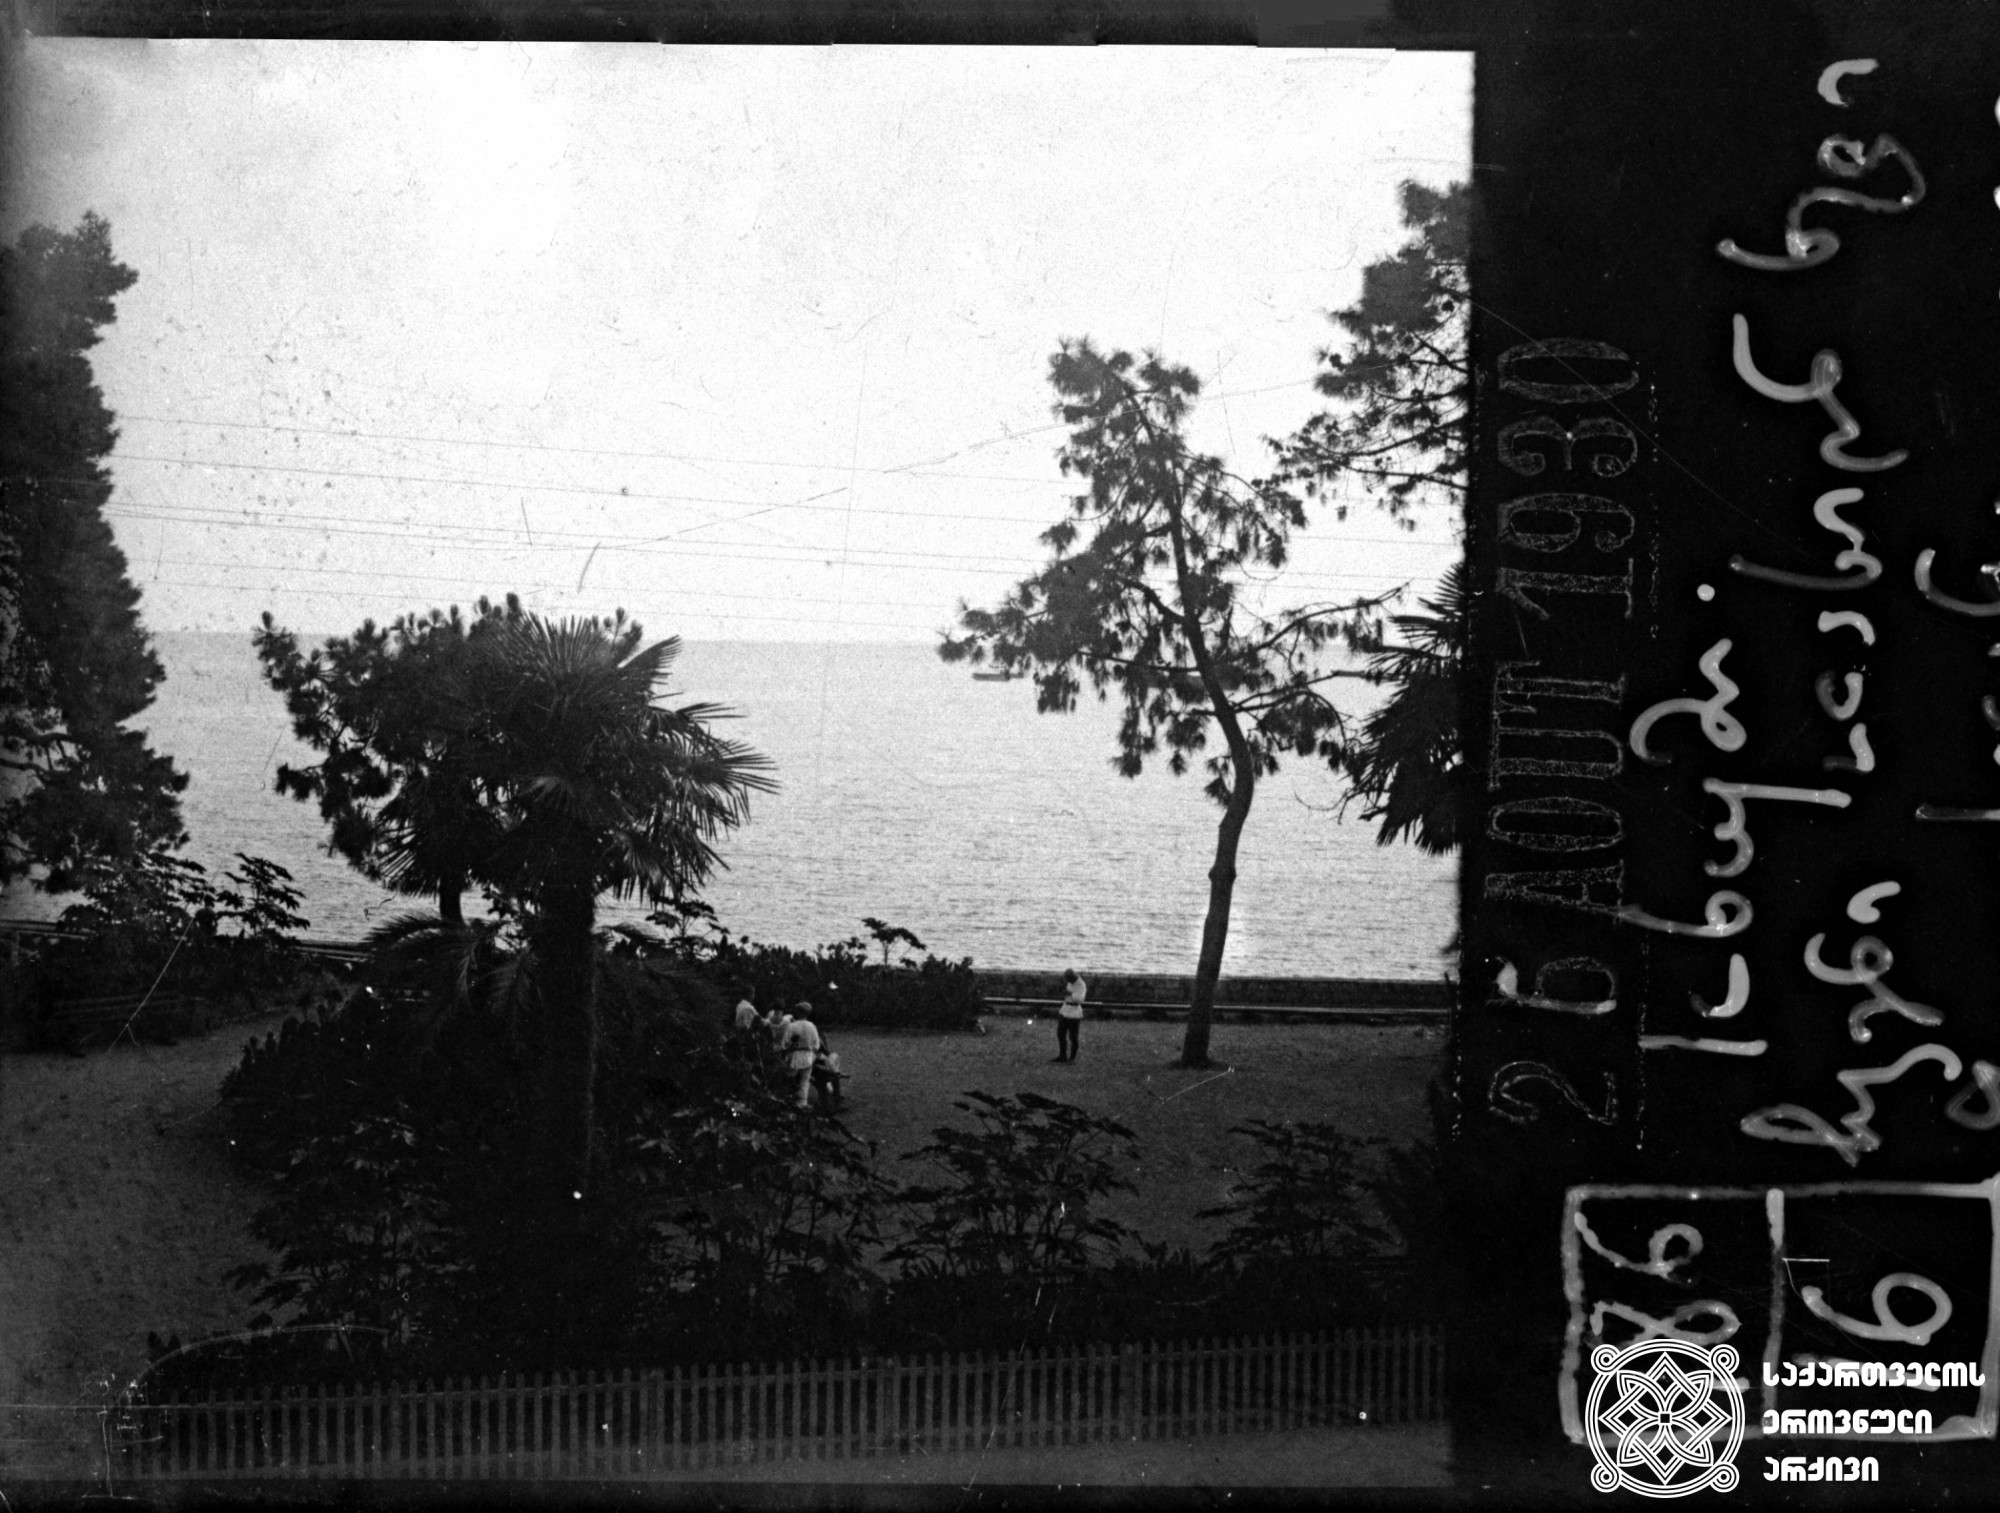 „სოხუმი. ჩვენი სახლიდან ხედი ზღვისაკენ“ (ნიკო ნიკოლაძის წარწერა ფირზე)  <br>
1930 წელი  <br>
გიორგი ნიკოლაძის ფოტო  <br>
"Sokhumi. View to the sea from our house" (Niko Nikoladze's inscription on the tape) <br>
1930  <br>
Giorgi Nikoladze's photo